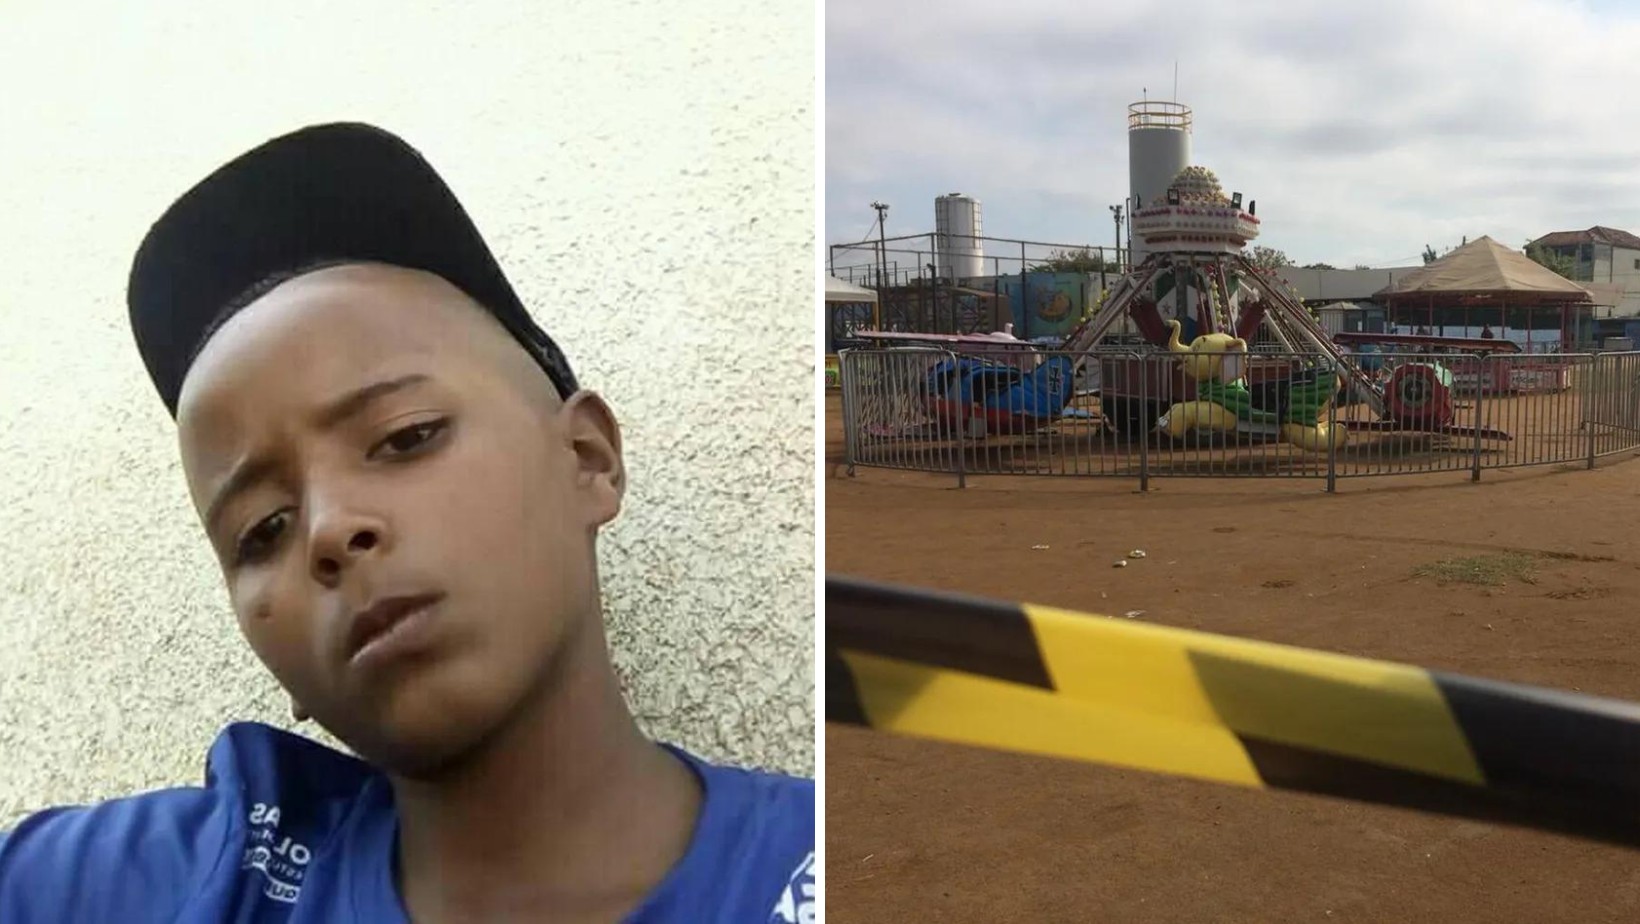 MP denuncia à Justiça PM acusado de matar adolescente de 12 anos em parque de diversões em São José dos Campos, SP